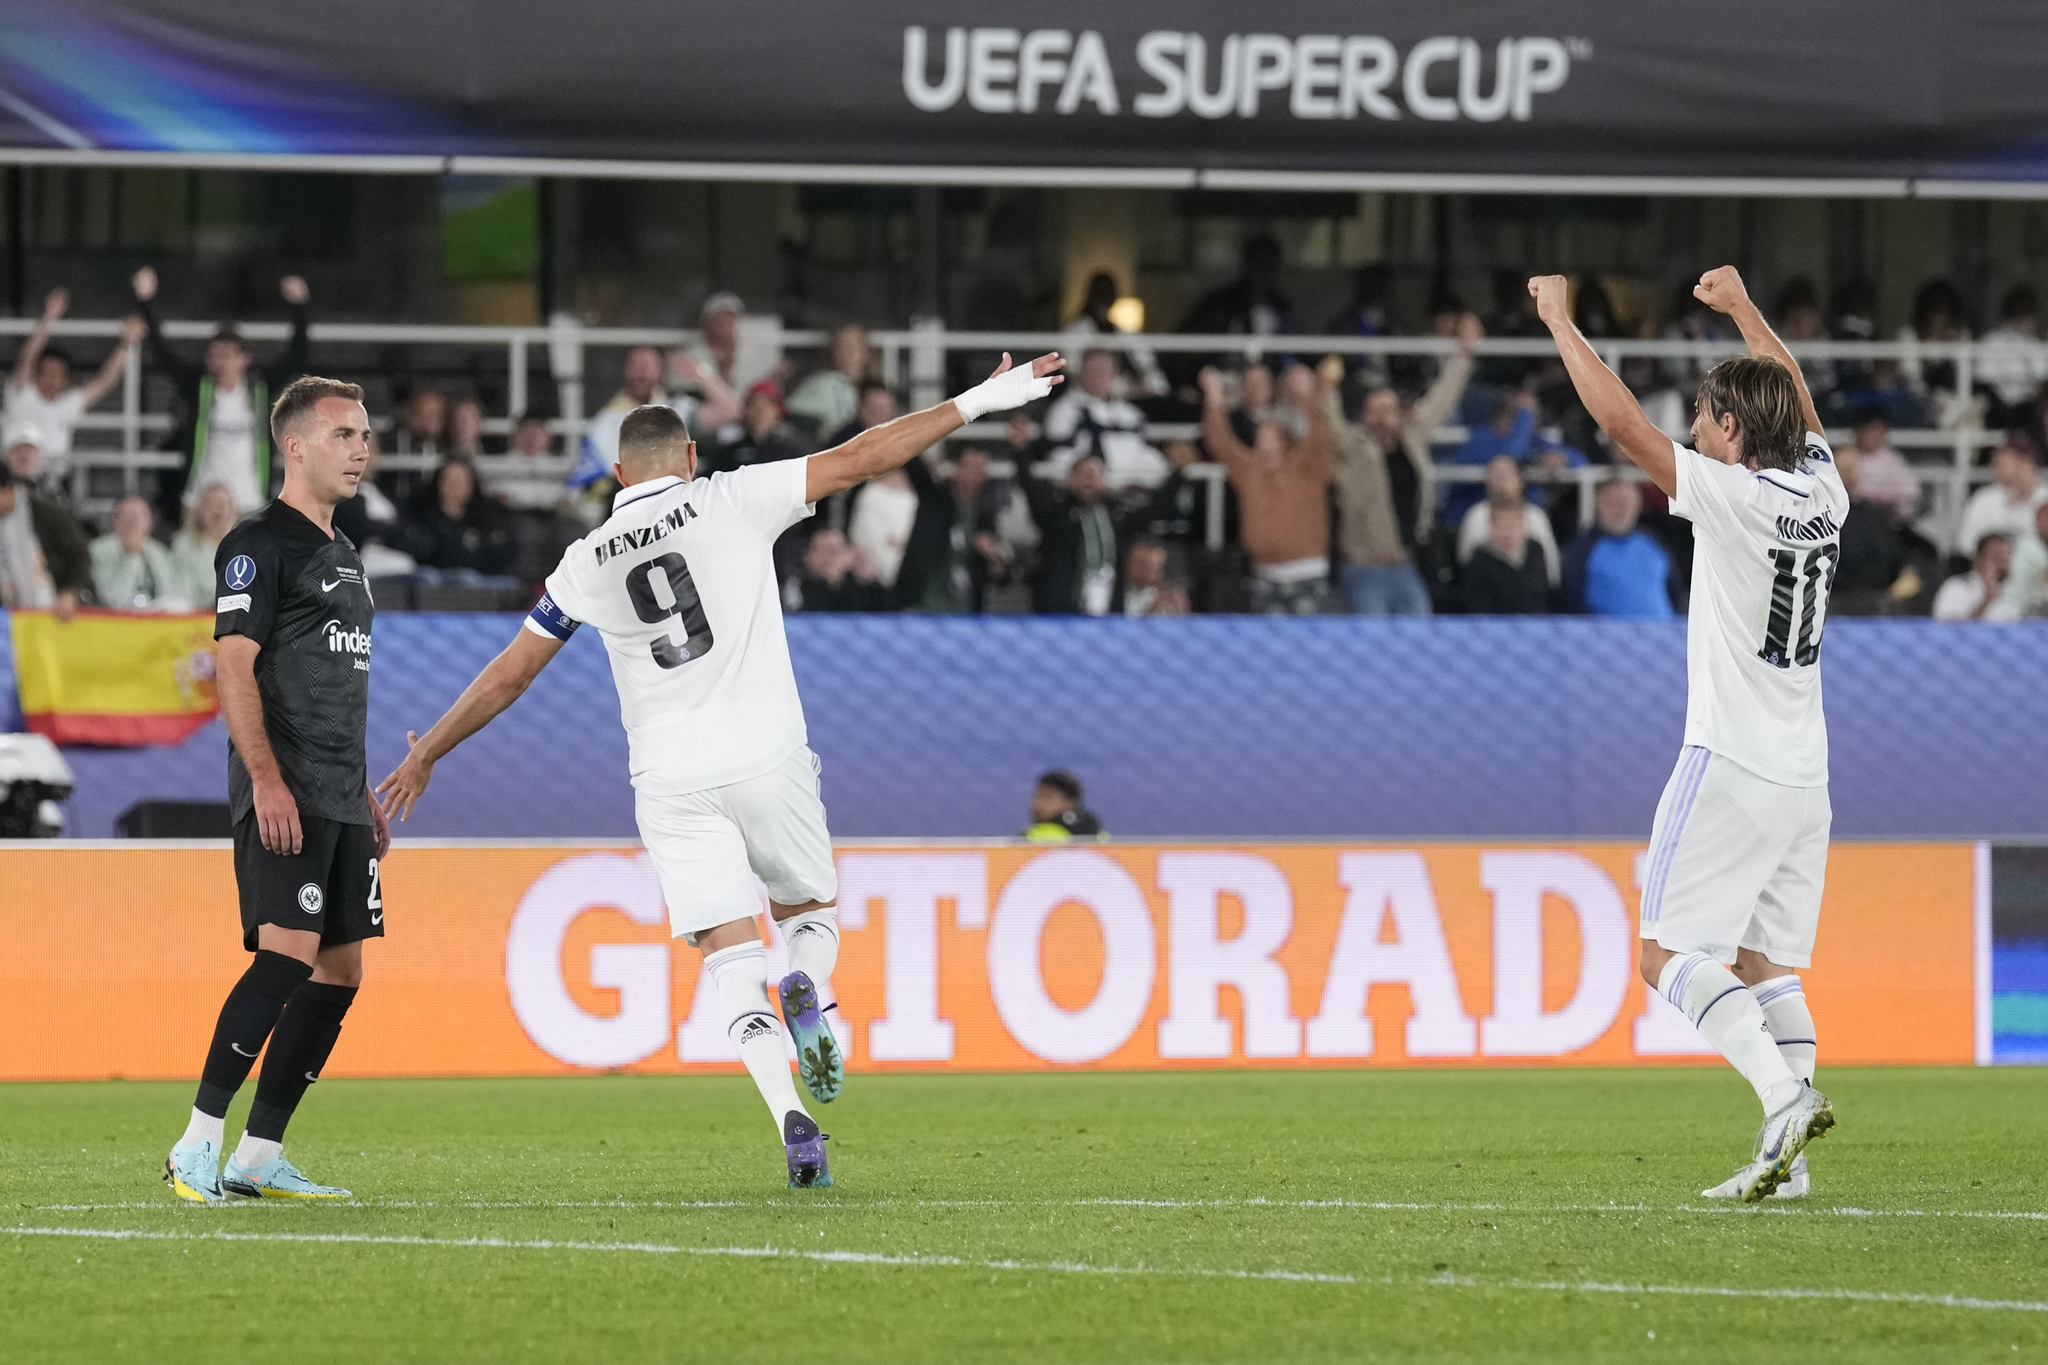 Real Madrid's Karim Benzema celebrates after scoring